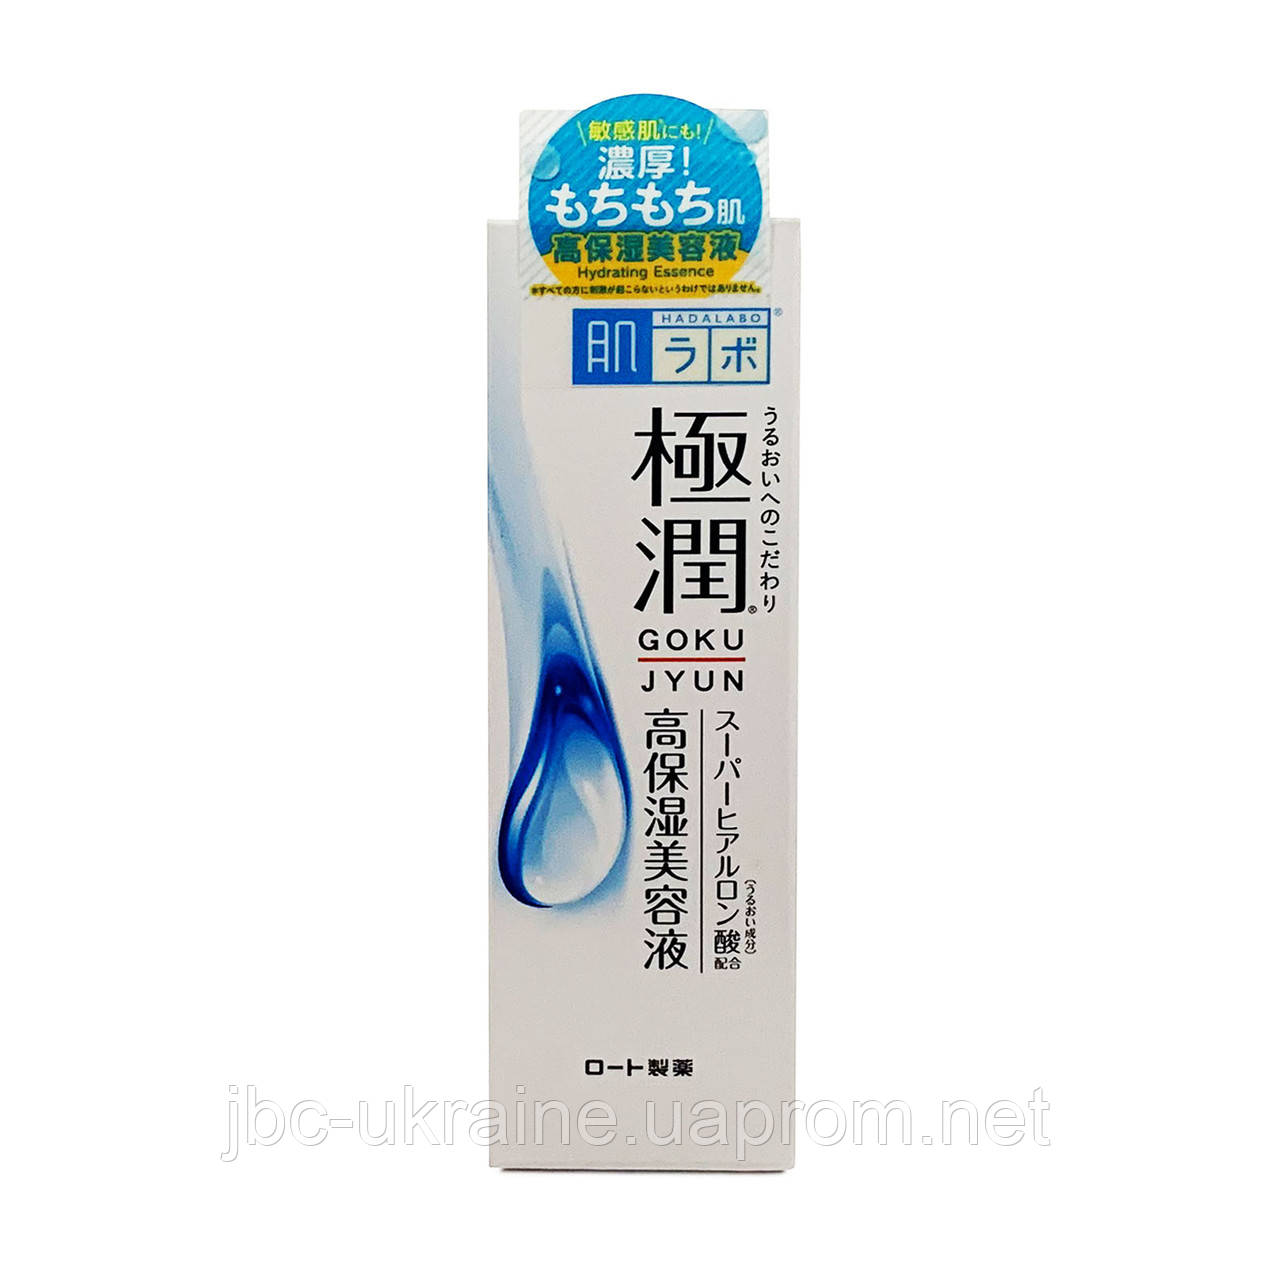 HADA LABO Gokujun Super Hyaluronic Acid Зволожуюче молочко з подвійною формулою гіалуронової кислоти 140 мл, фото 1